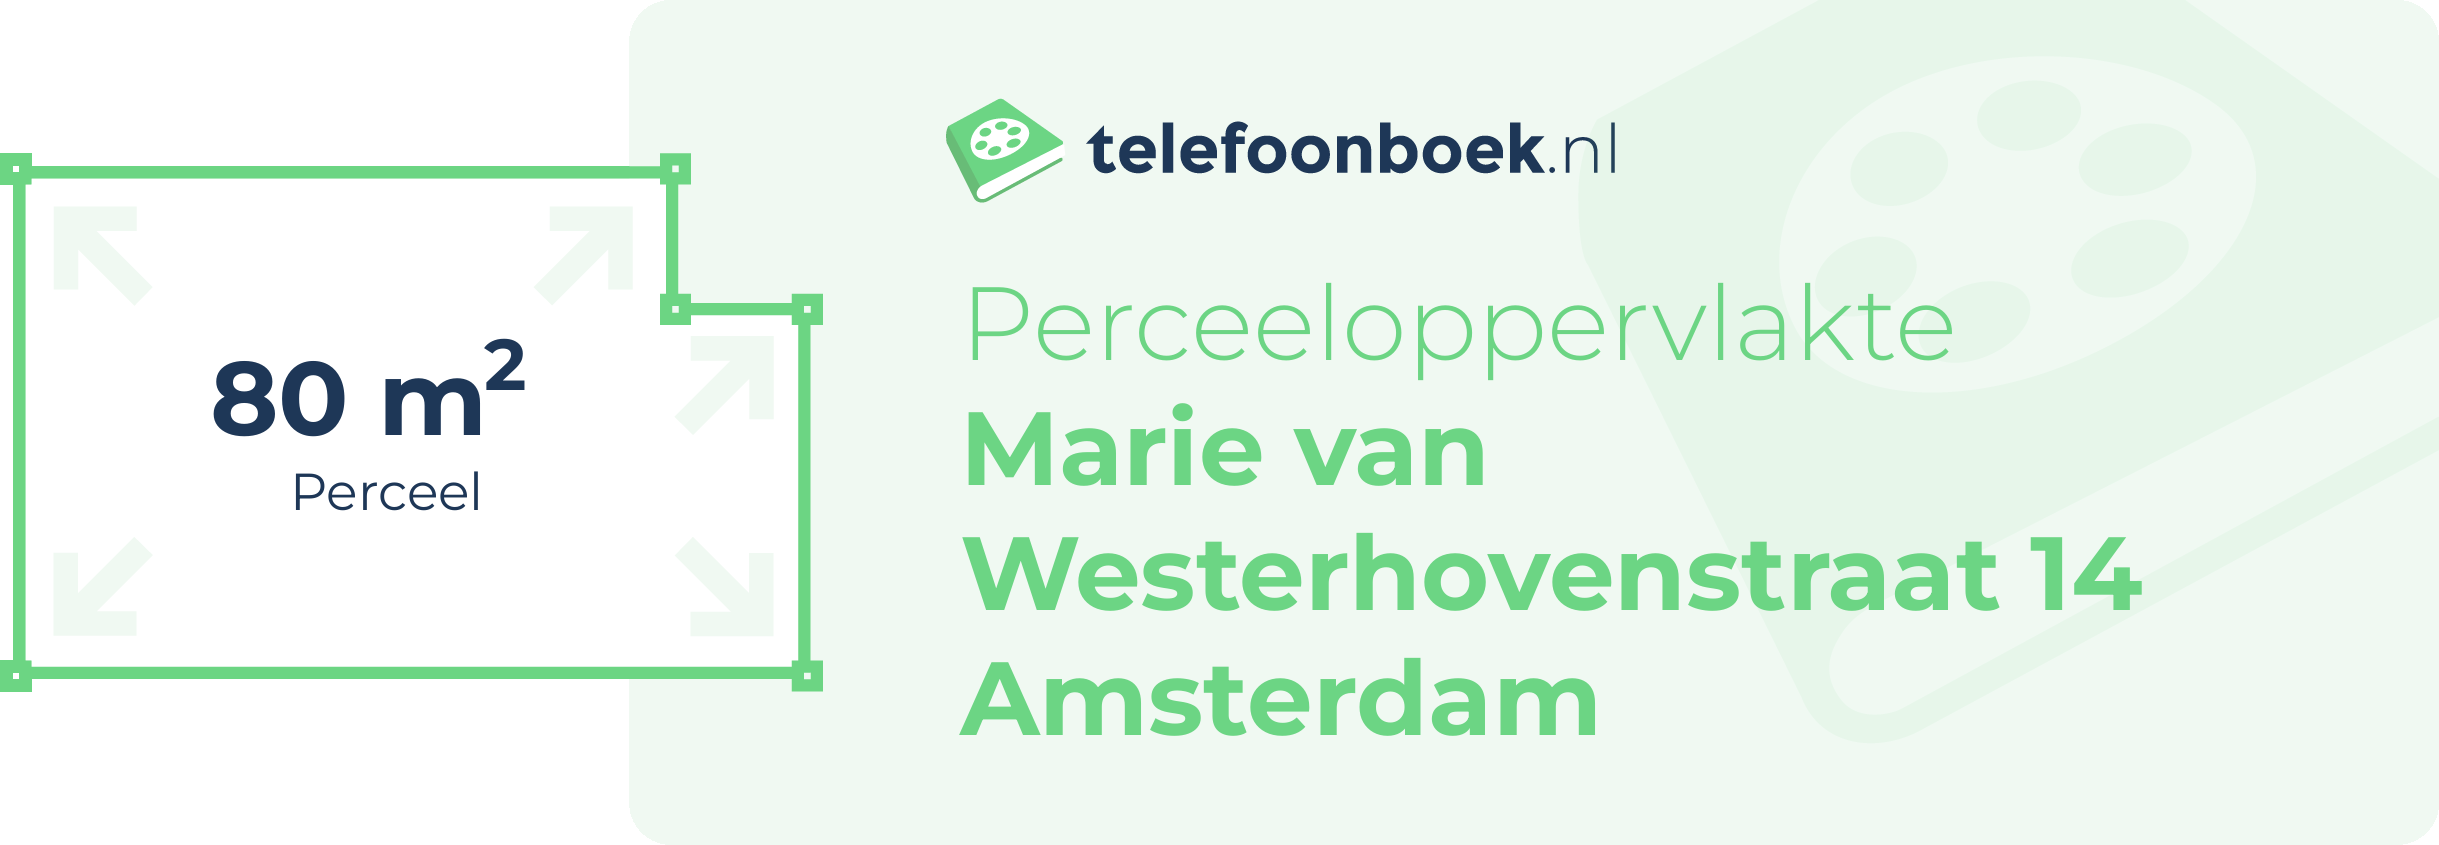 Perceeloppervlakte Marie Van Westerhovenstraat 14 Amsterdam